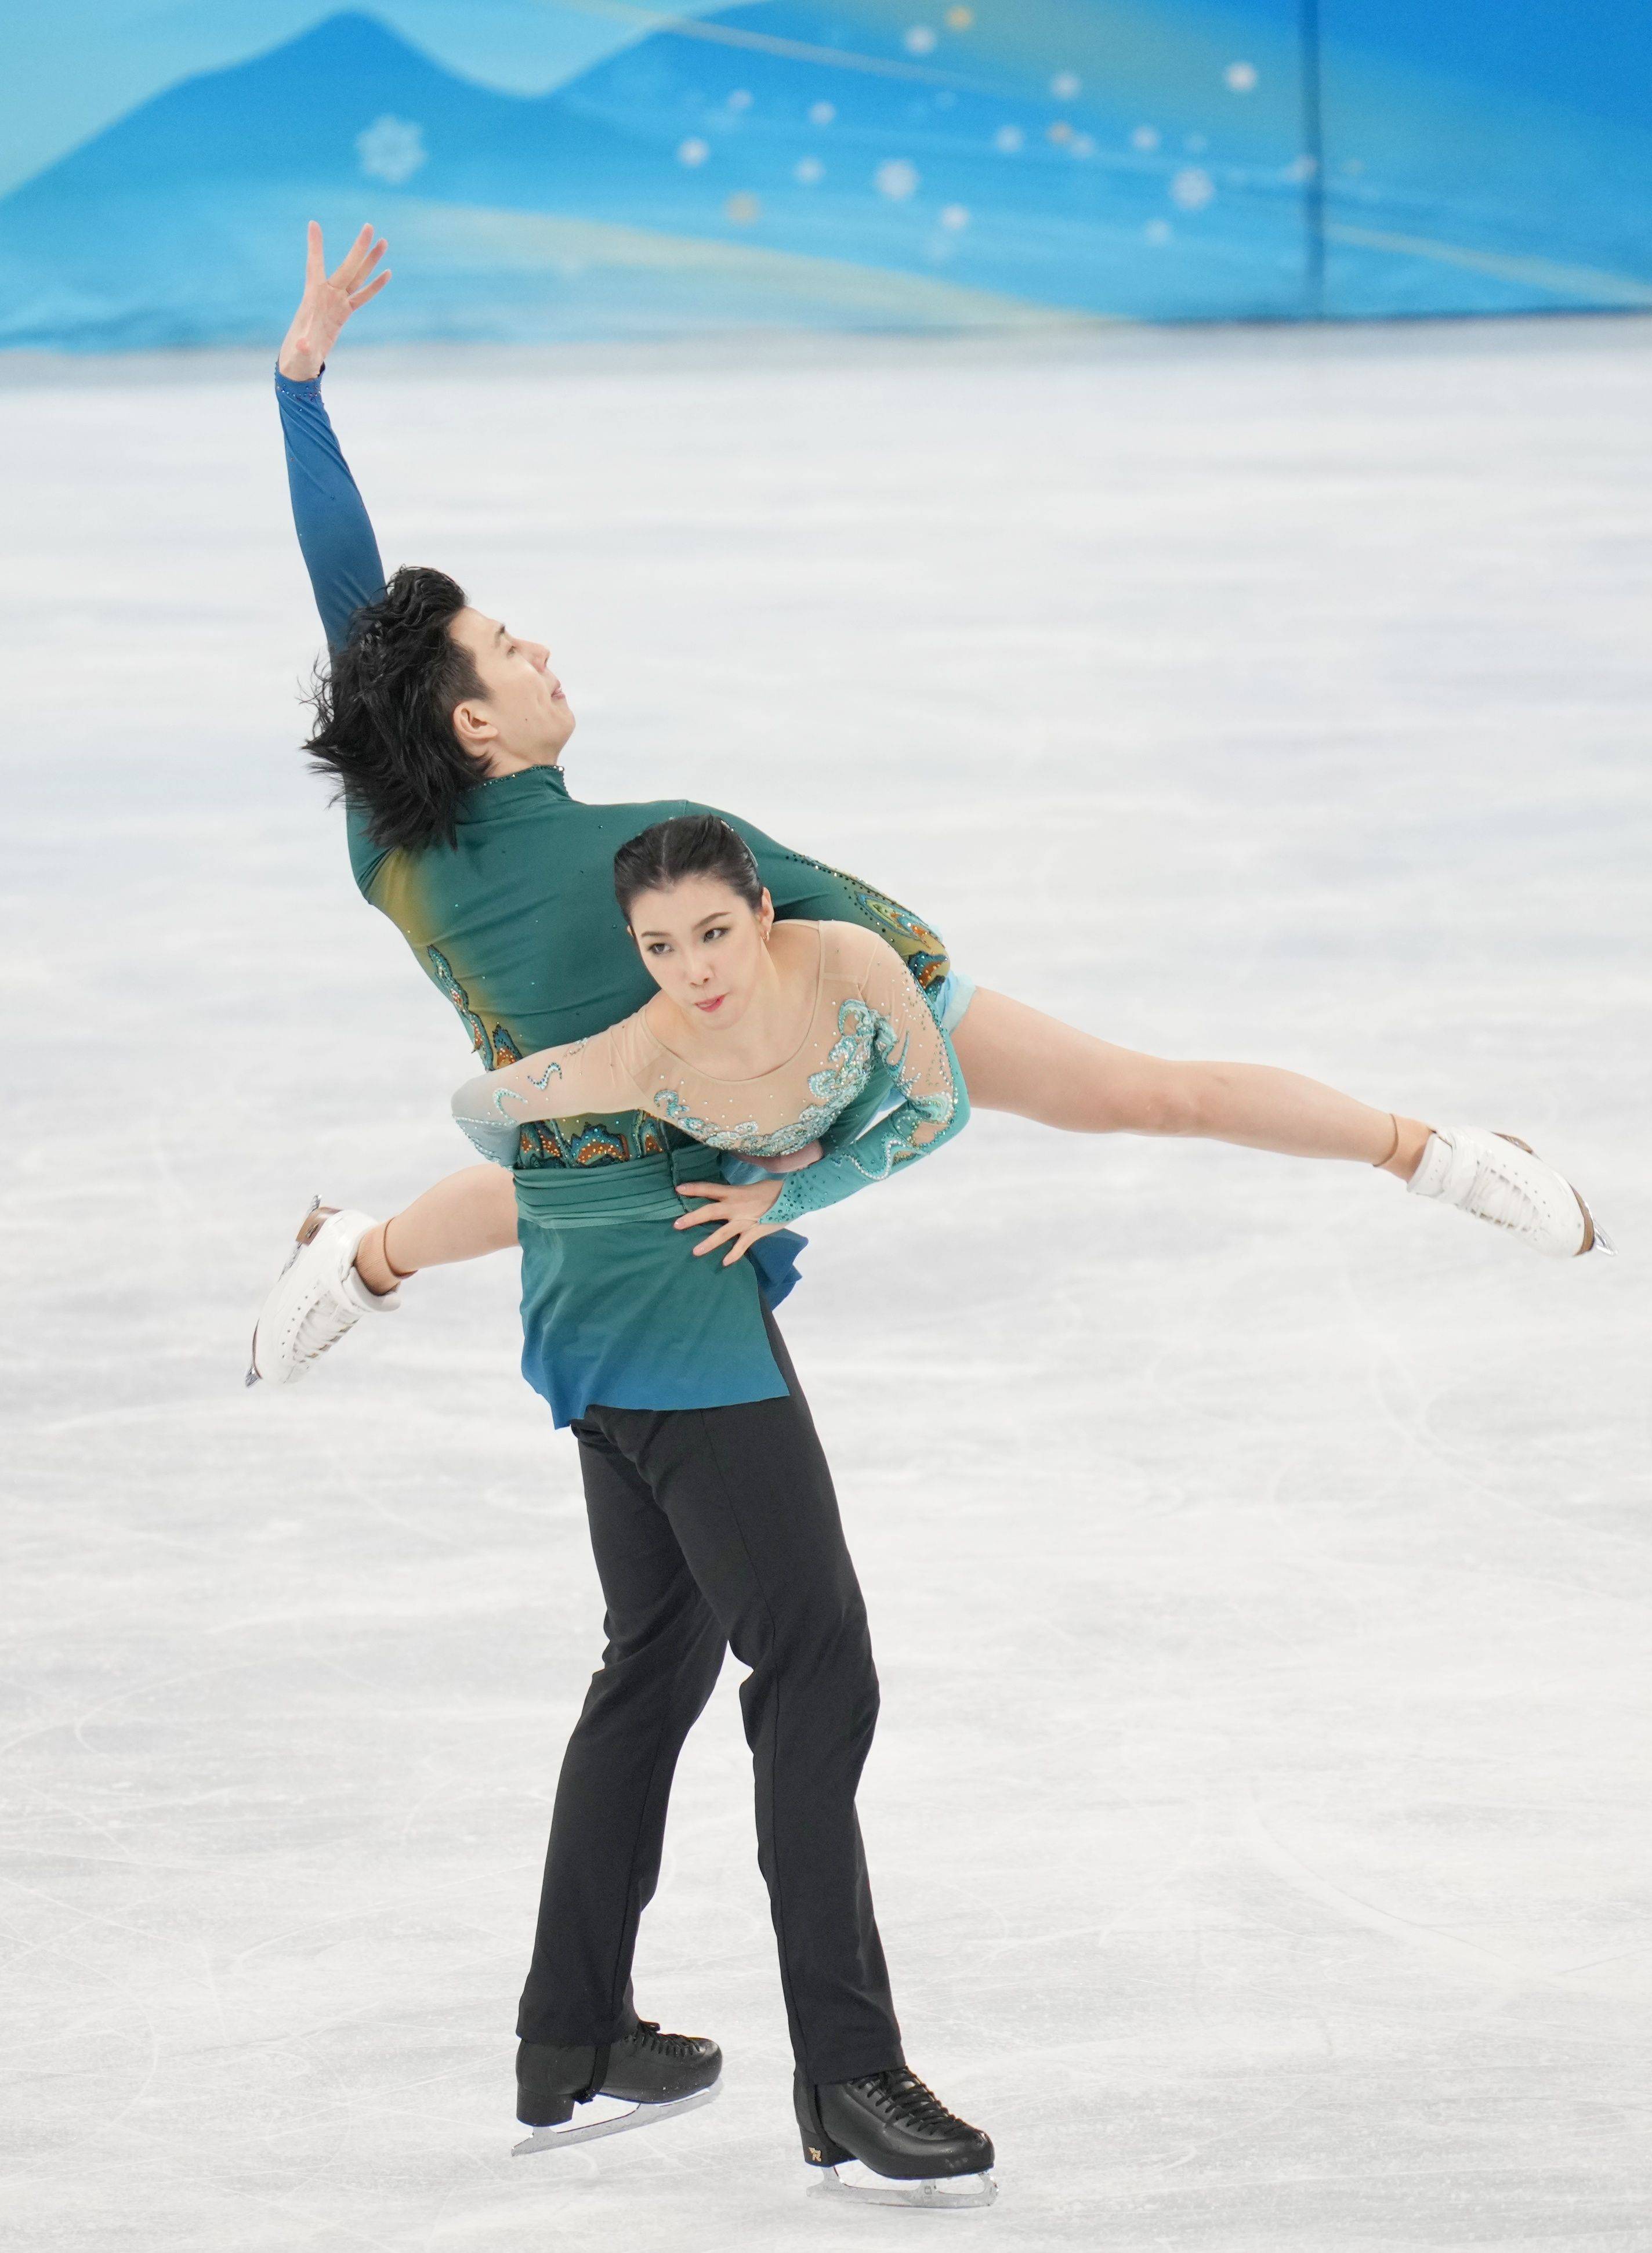 北京冬奥冰舞冠军图片